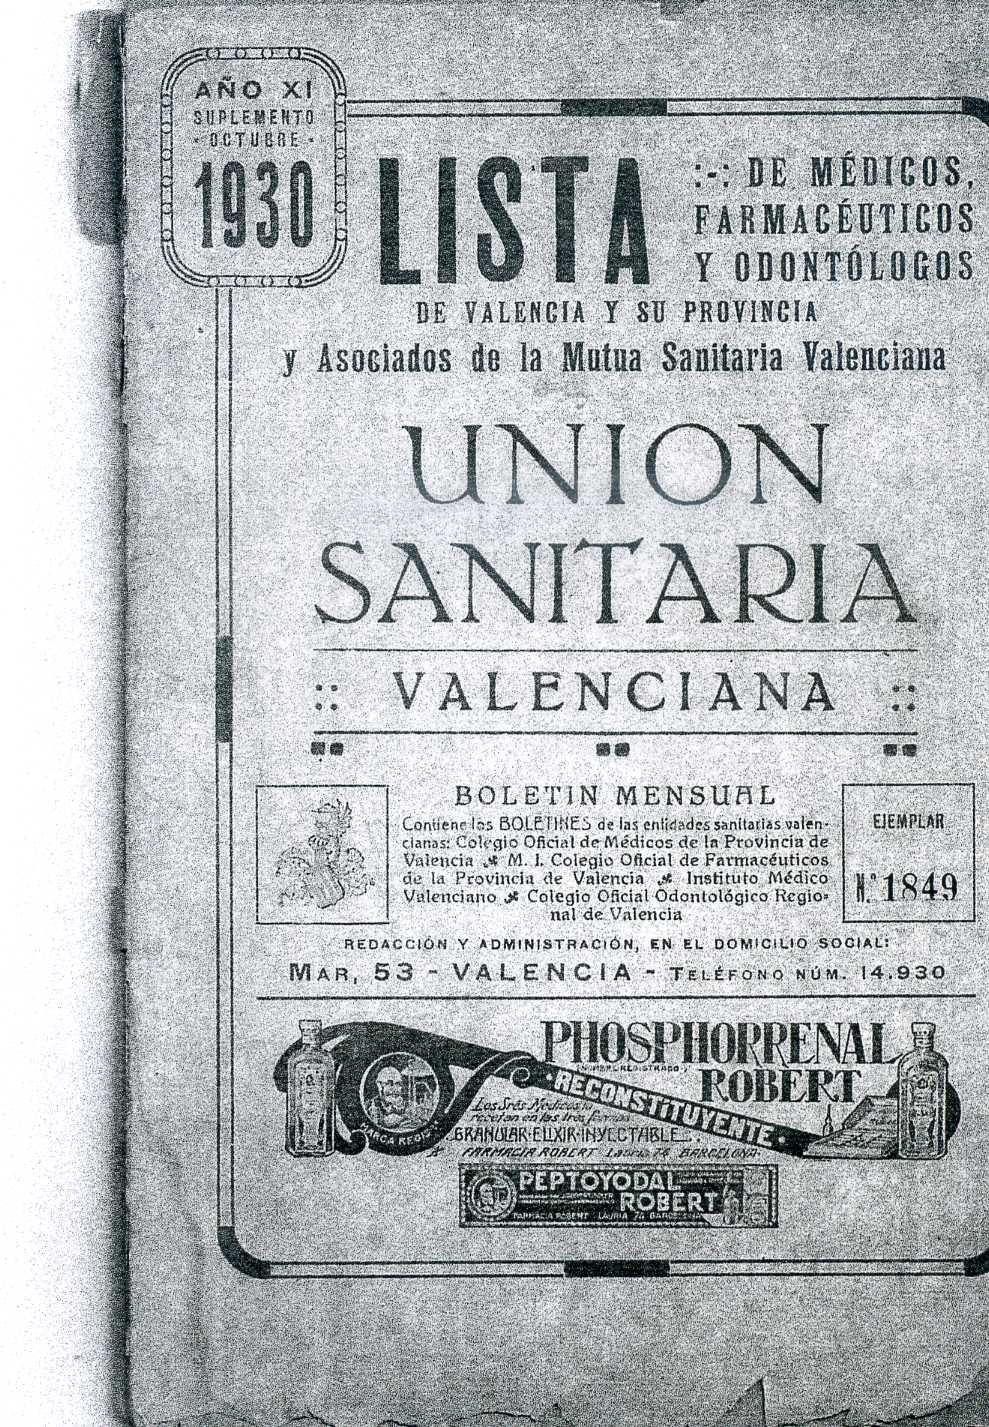 Lista de médicos, farmacéuticos i odontólogos de Valencia y su provincia 1930